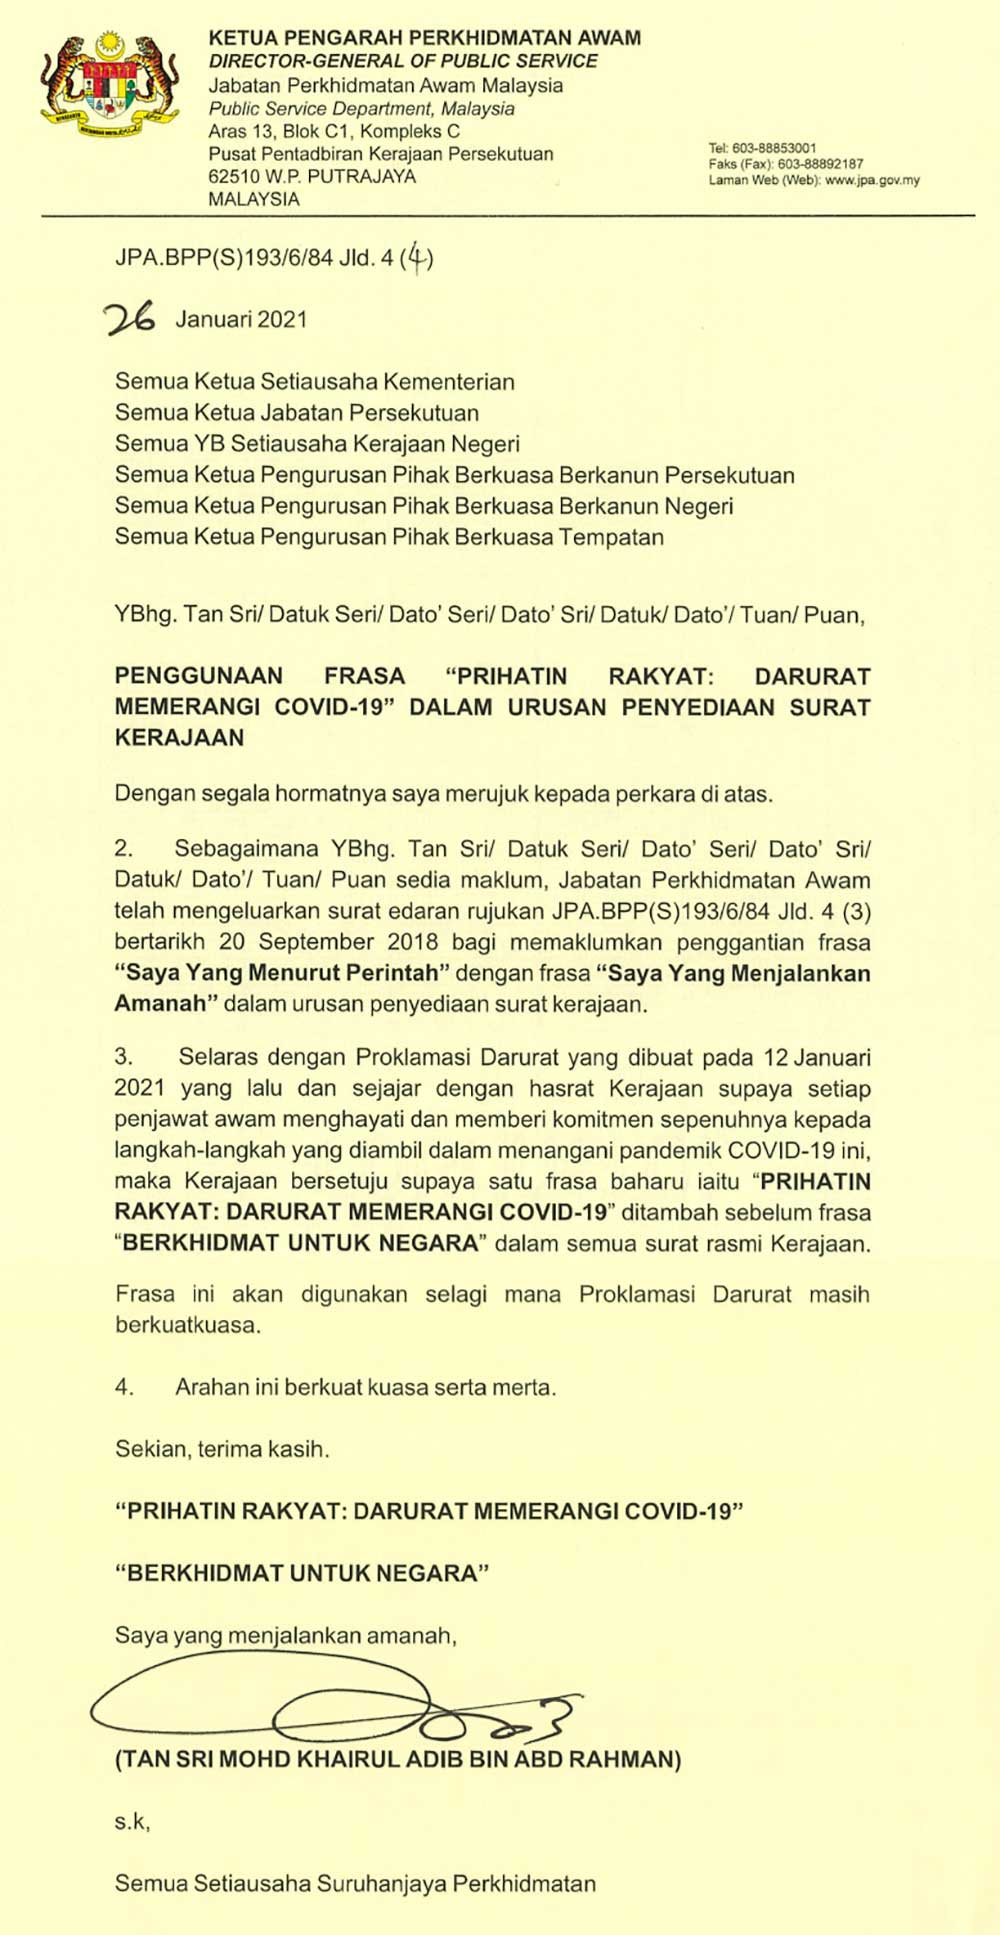 Malaysiakini Prihatin Rakyat Darurat Memerangi Covid 19 Wajib Dalam Surat Rasmi K Jaan